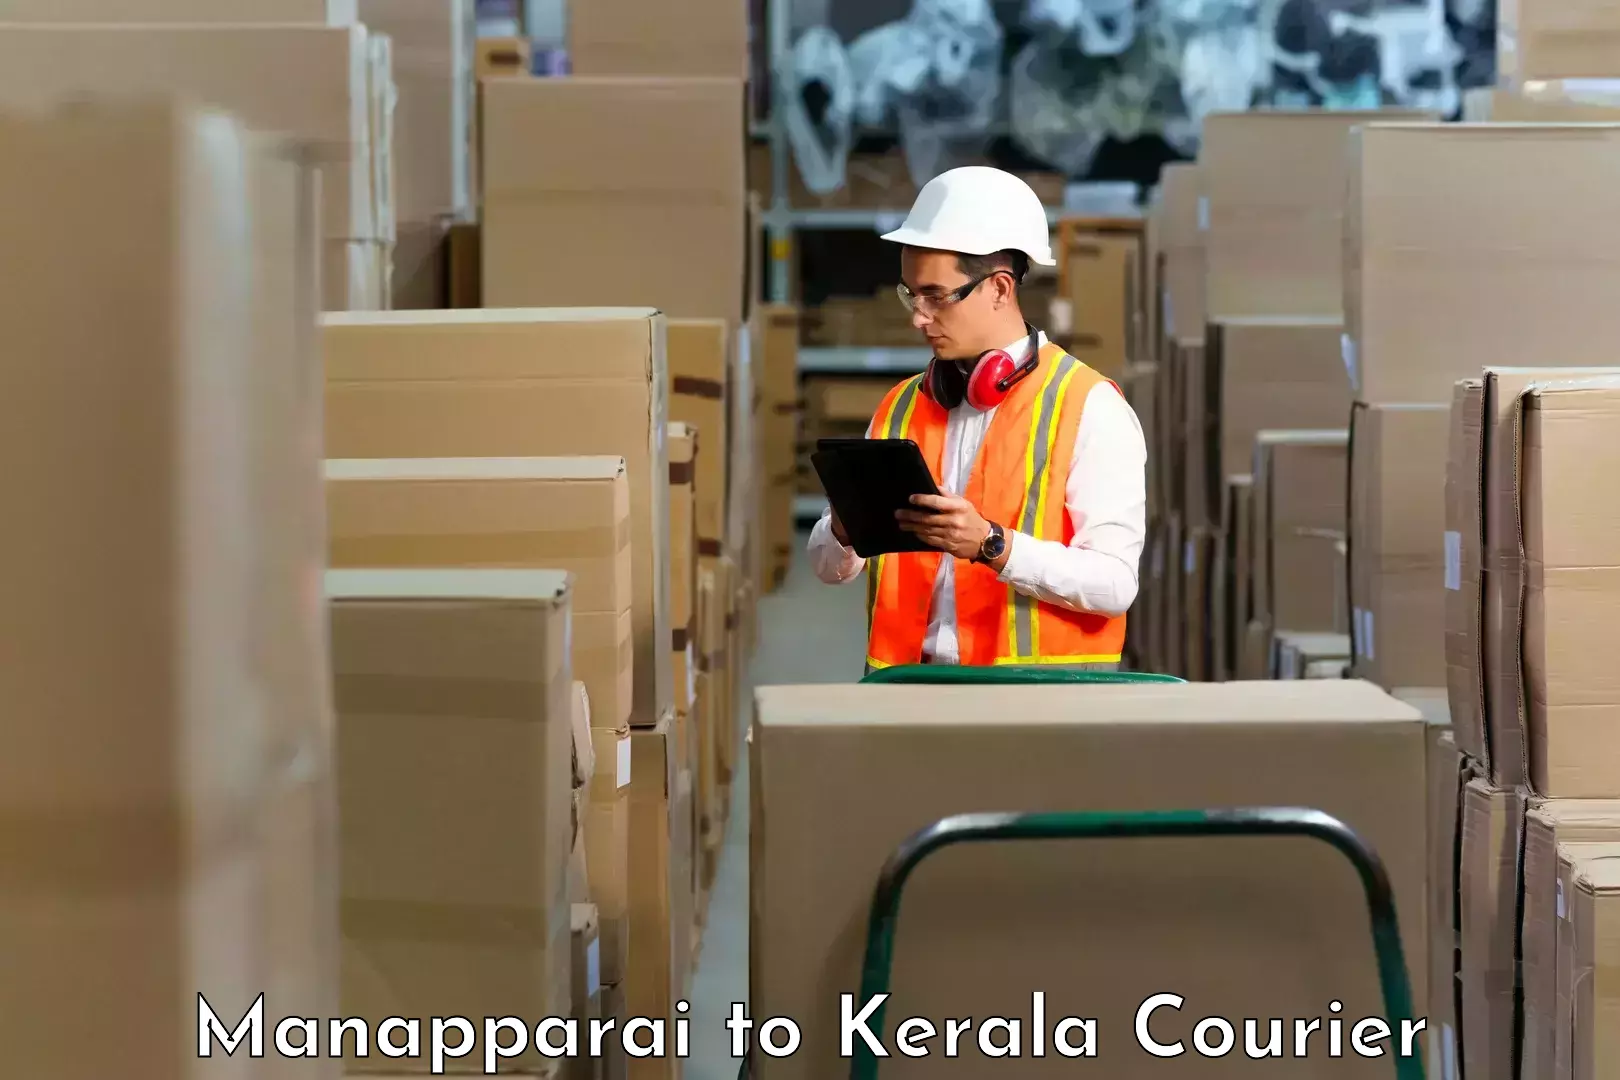 Advanced shipping network Manapparai to Kannur